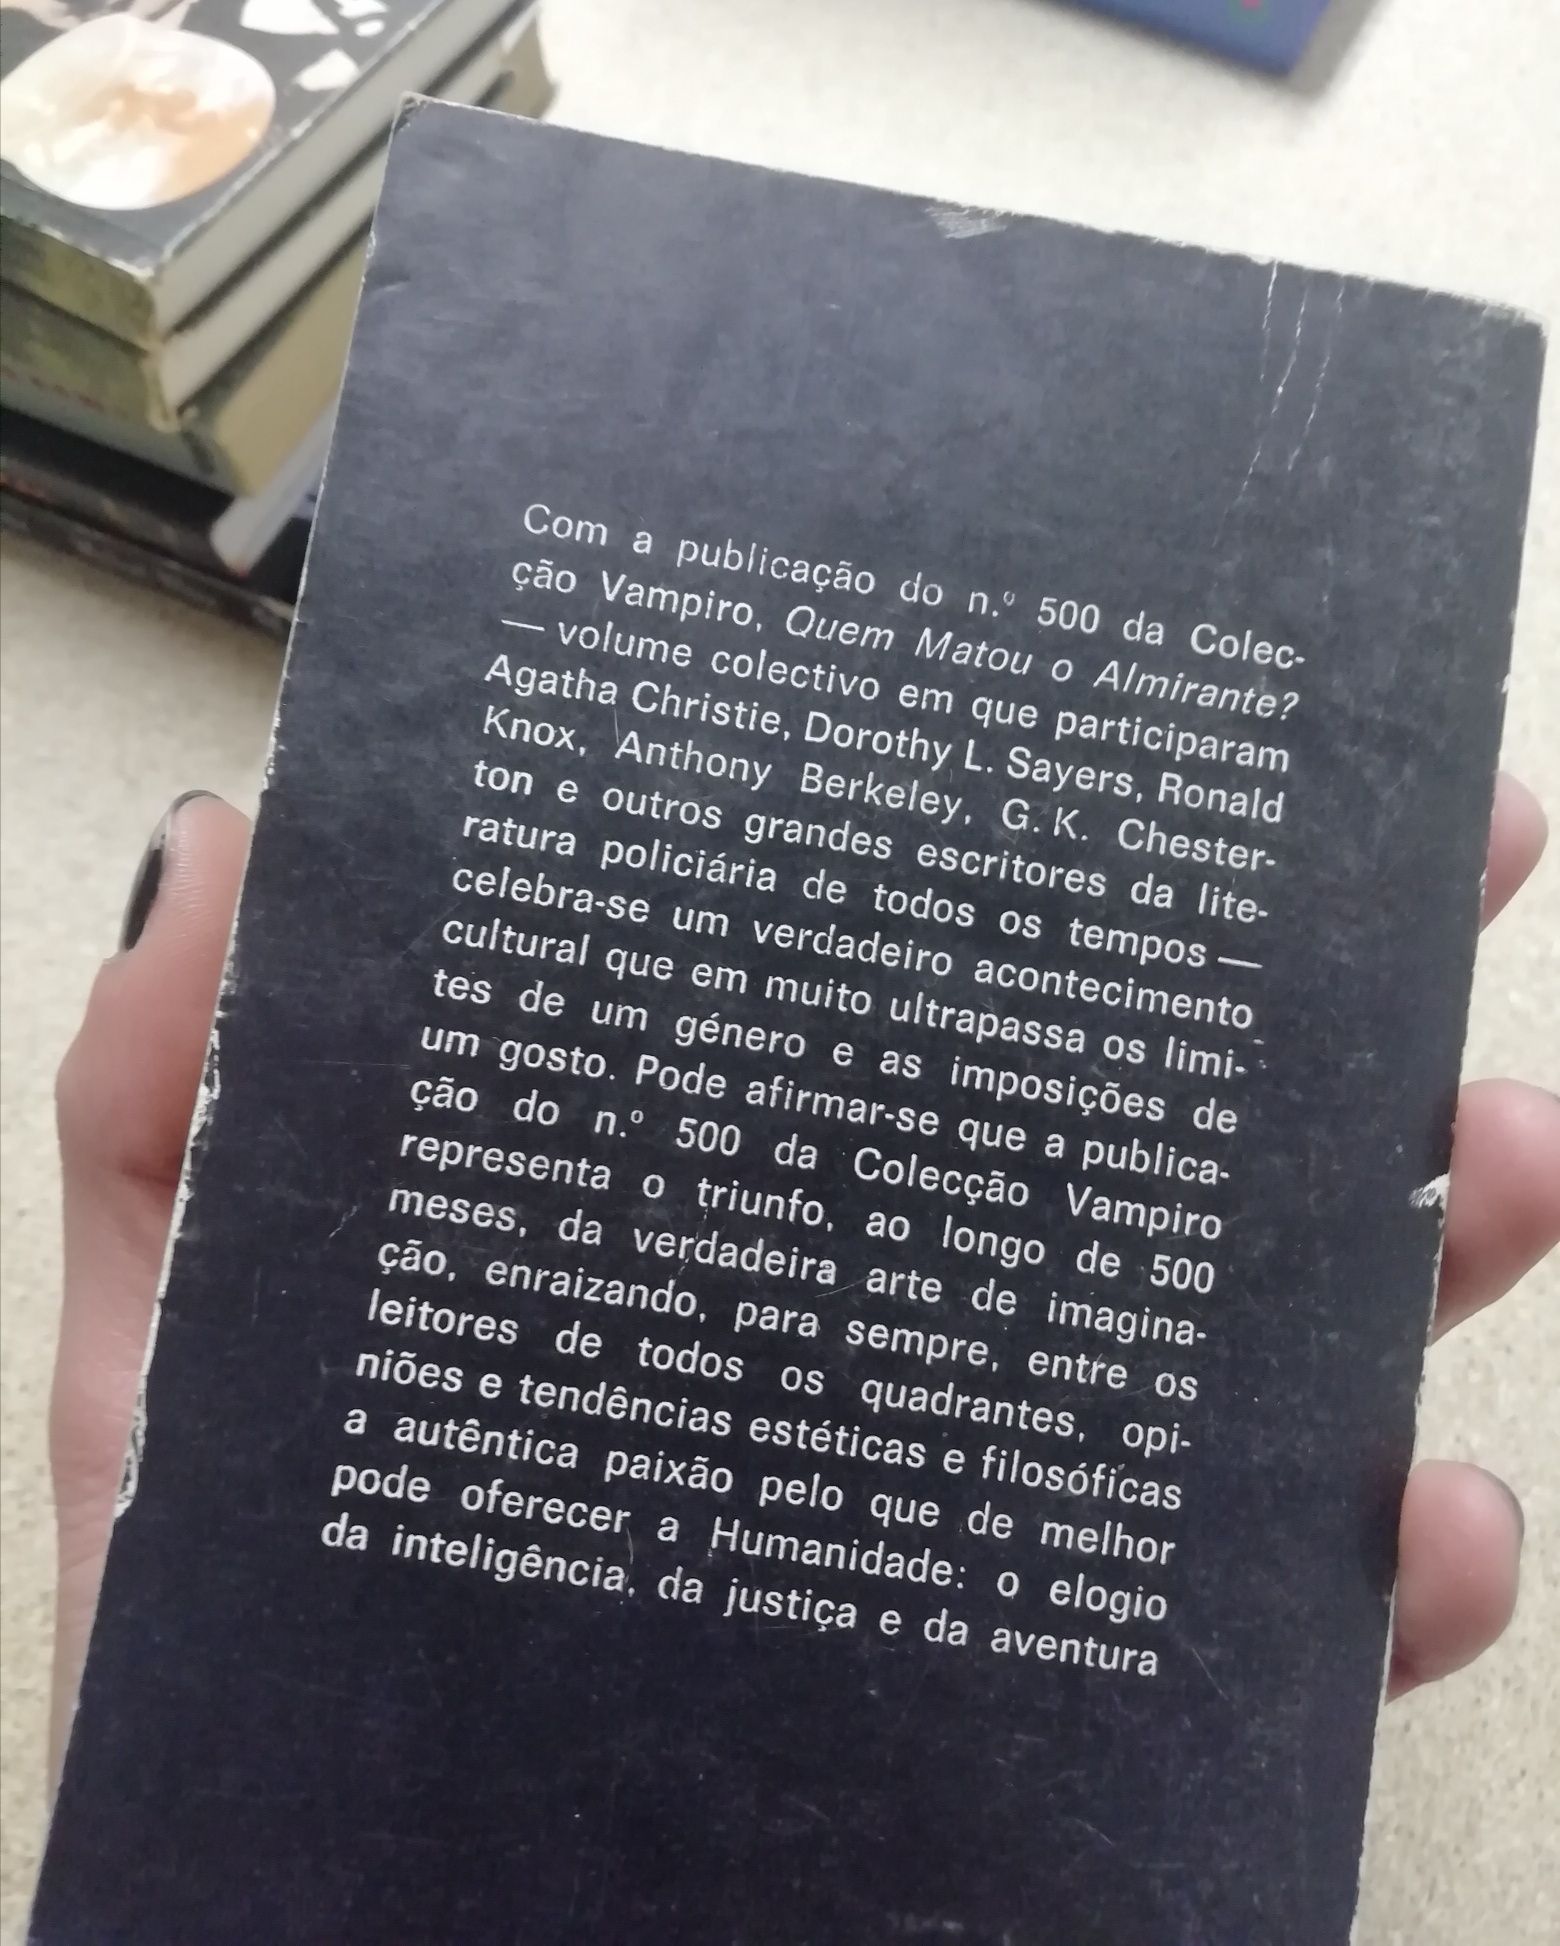 Livros ficção policial // Colecção Vampiro // Agatha Christie